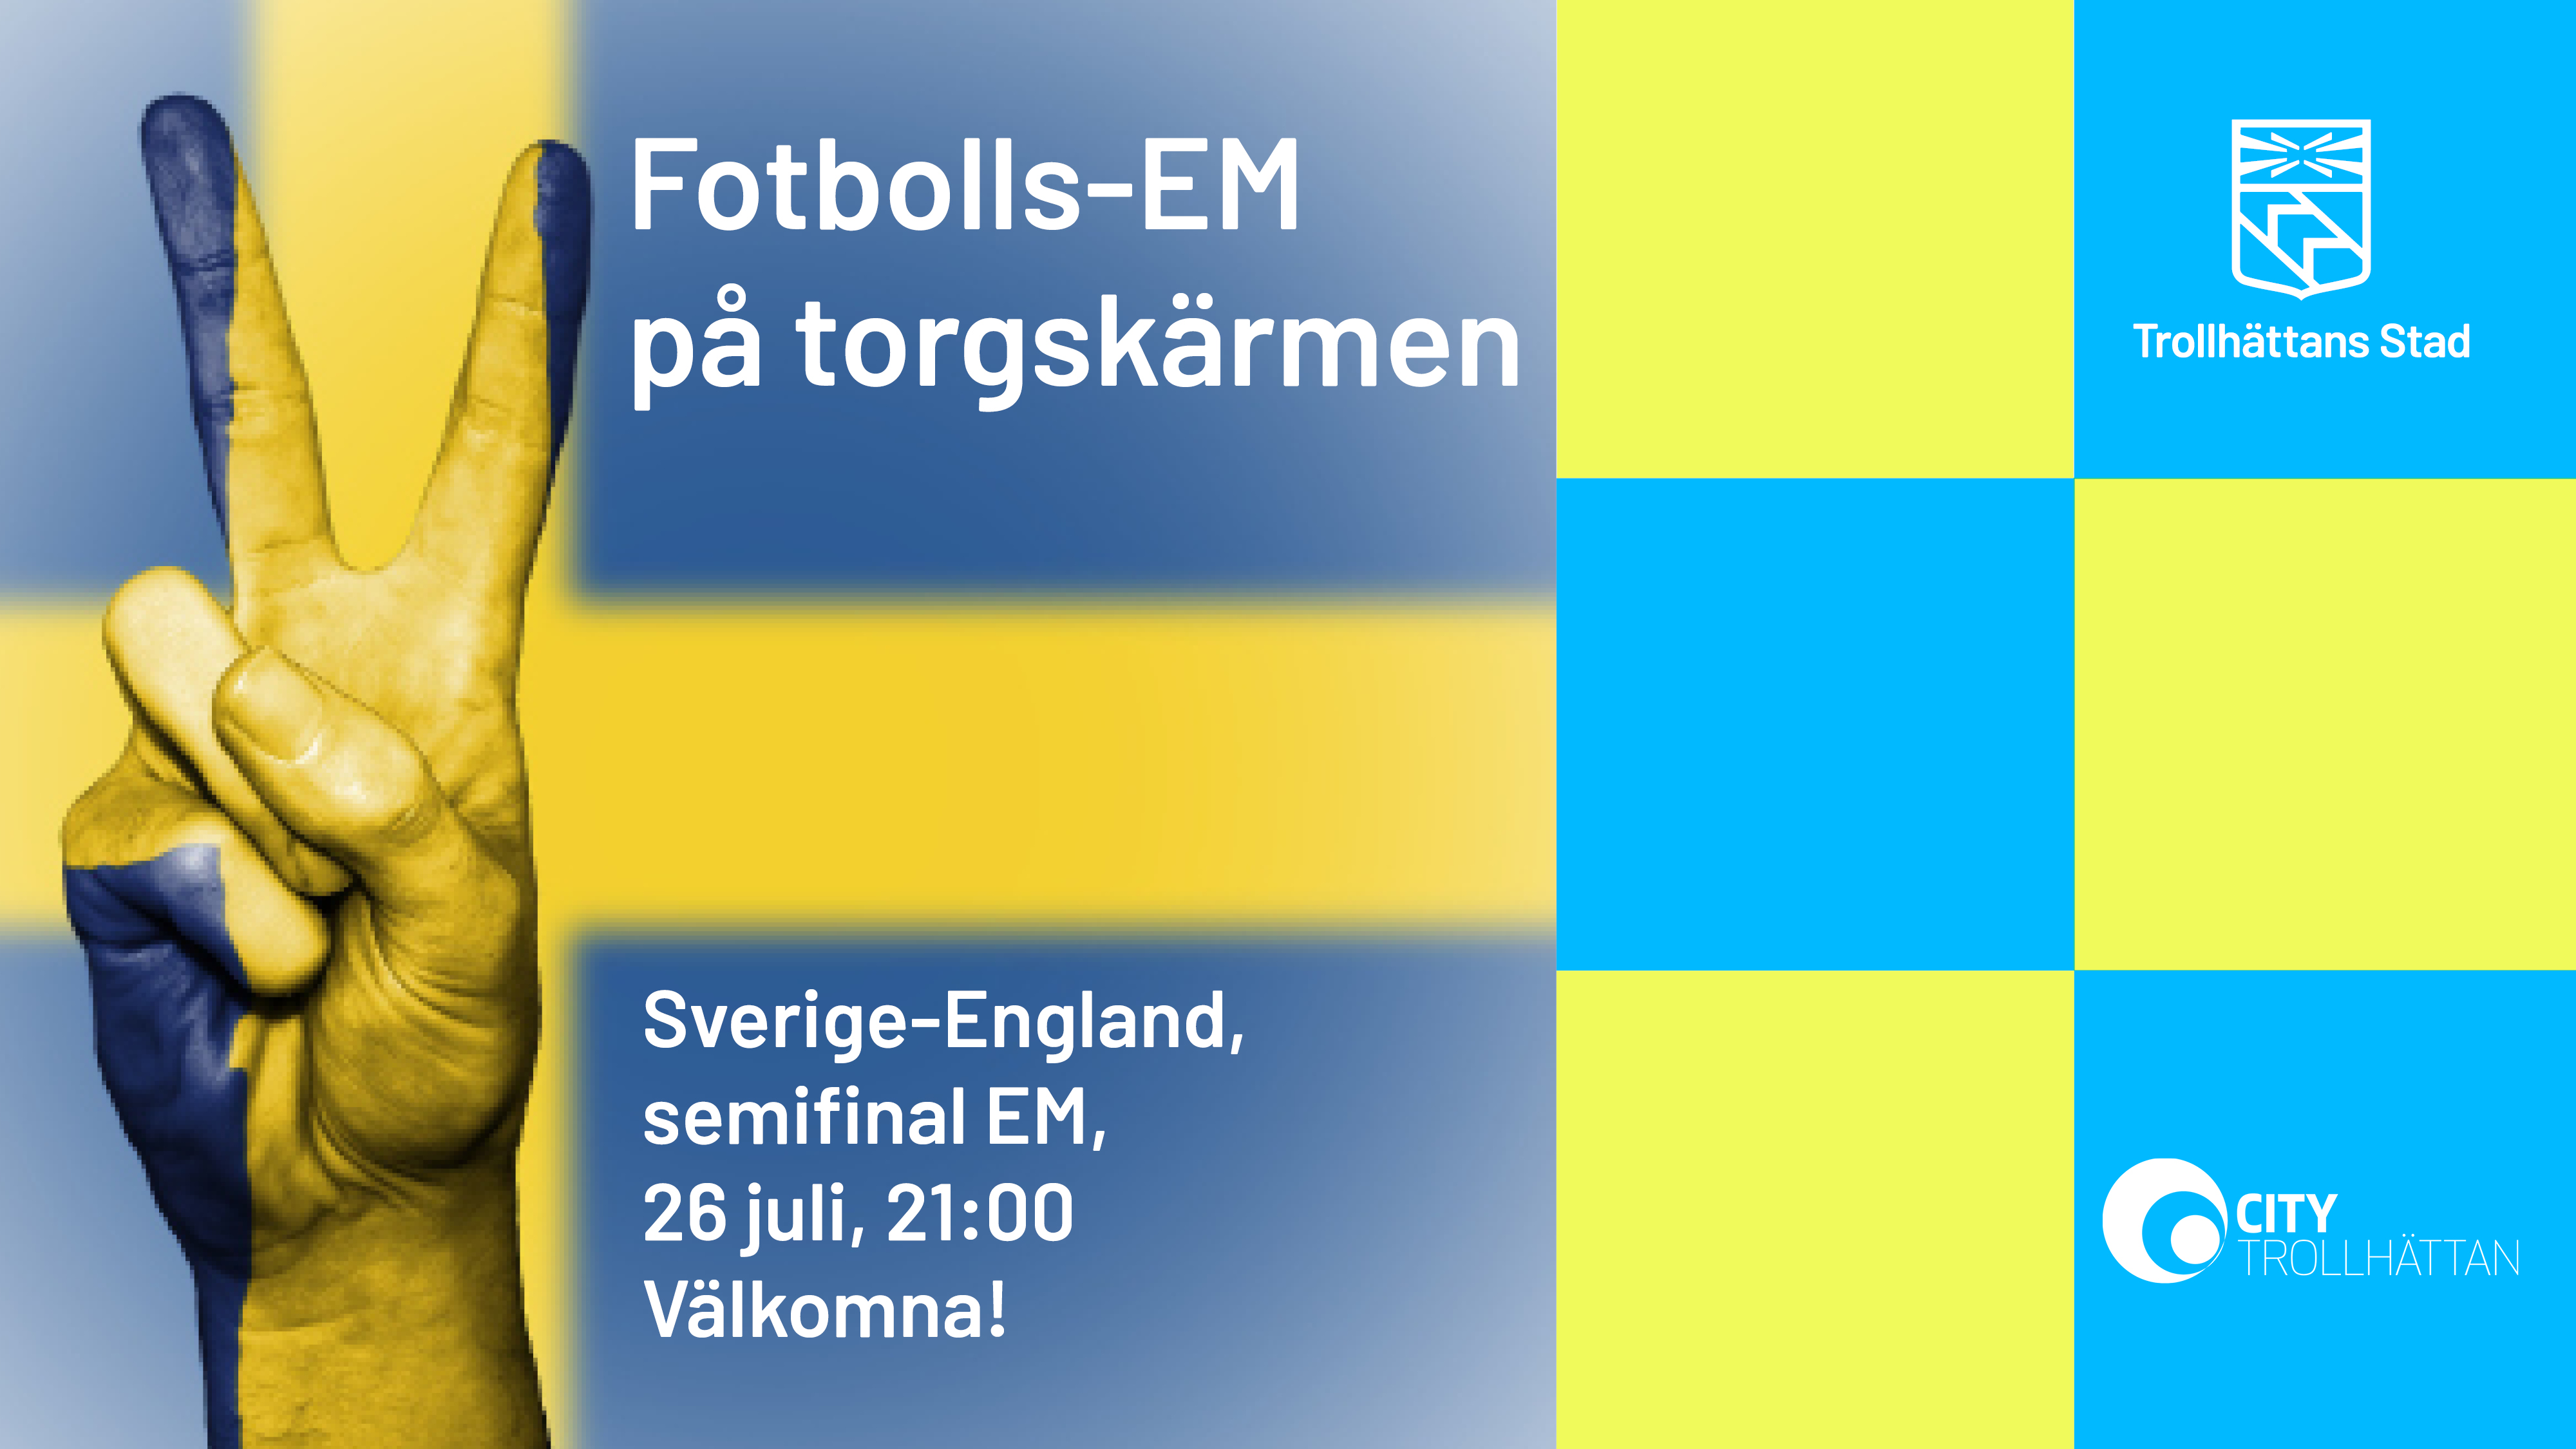 Svenska flaggan i bakgrunden, och texten: Fotbolls-em på torgskärmen, Sverige-England, semifinal EM, 26 juli, 21.00. Välkomna!